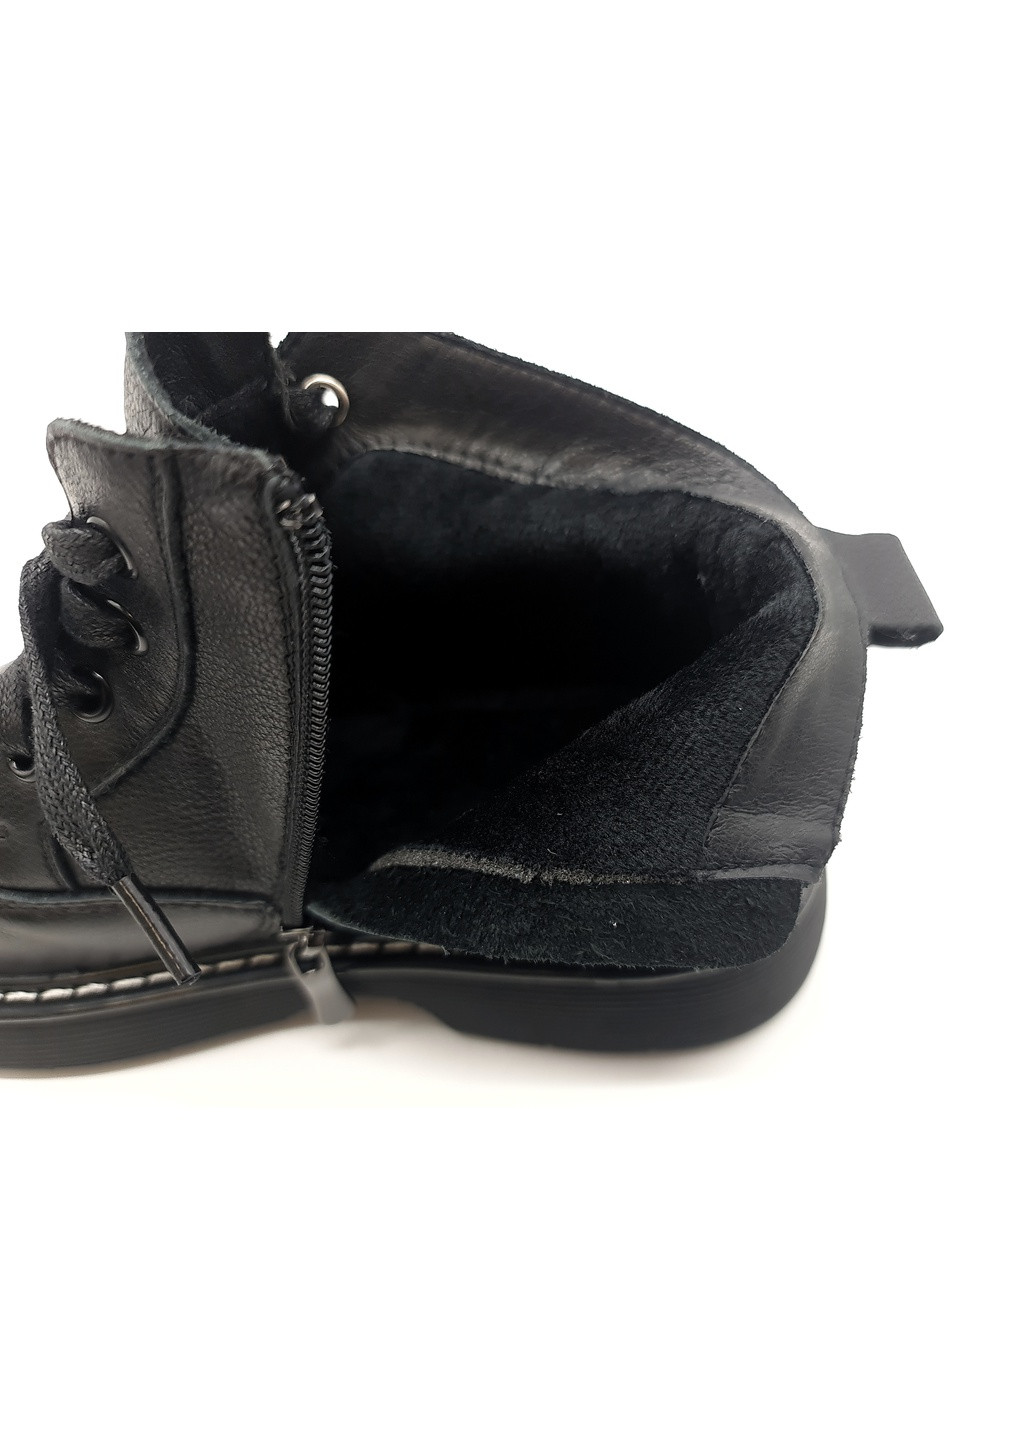 Осенние женские ботинки черные кожаные bv-13-3 23 см (р) Boss Victori